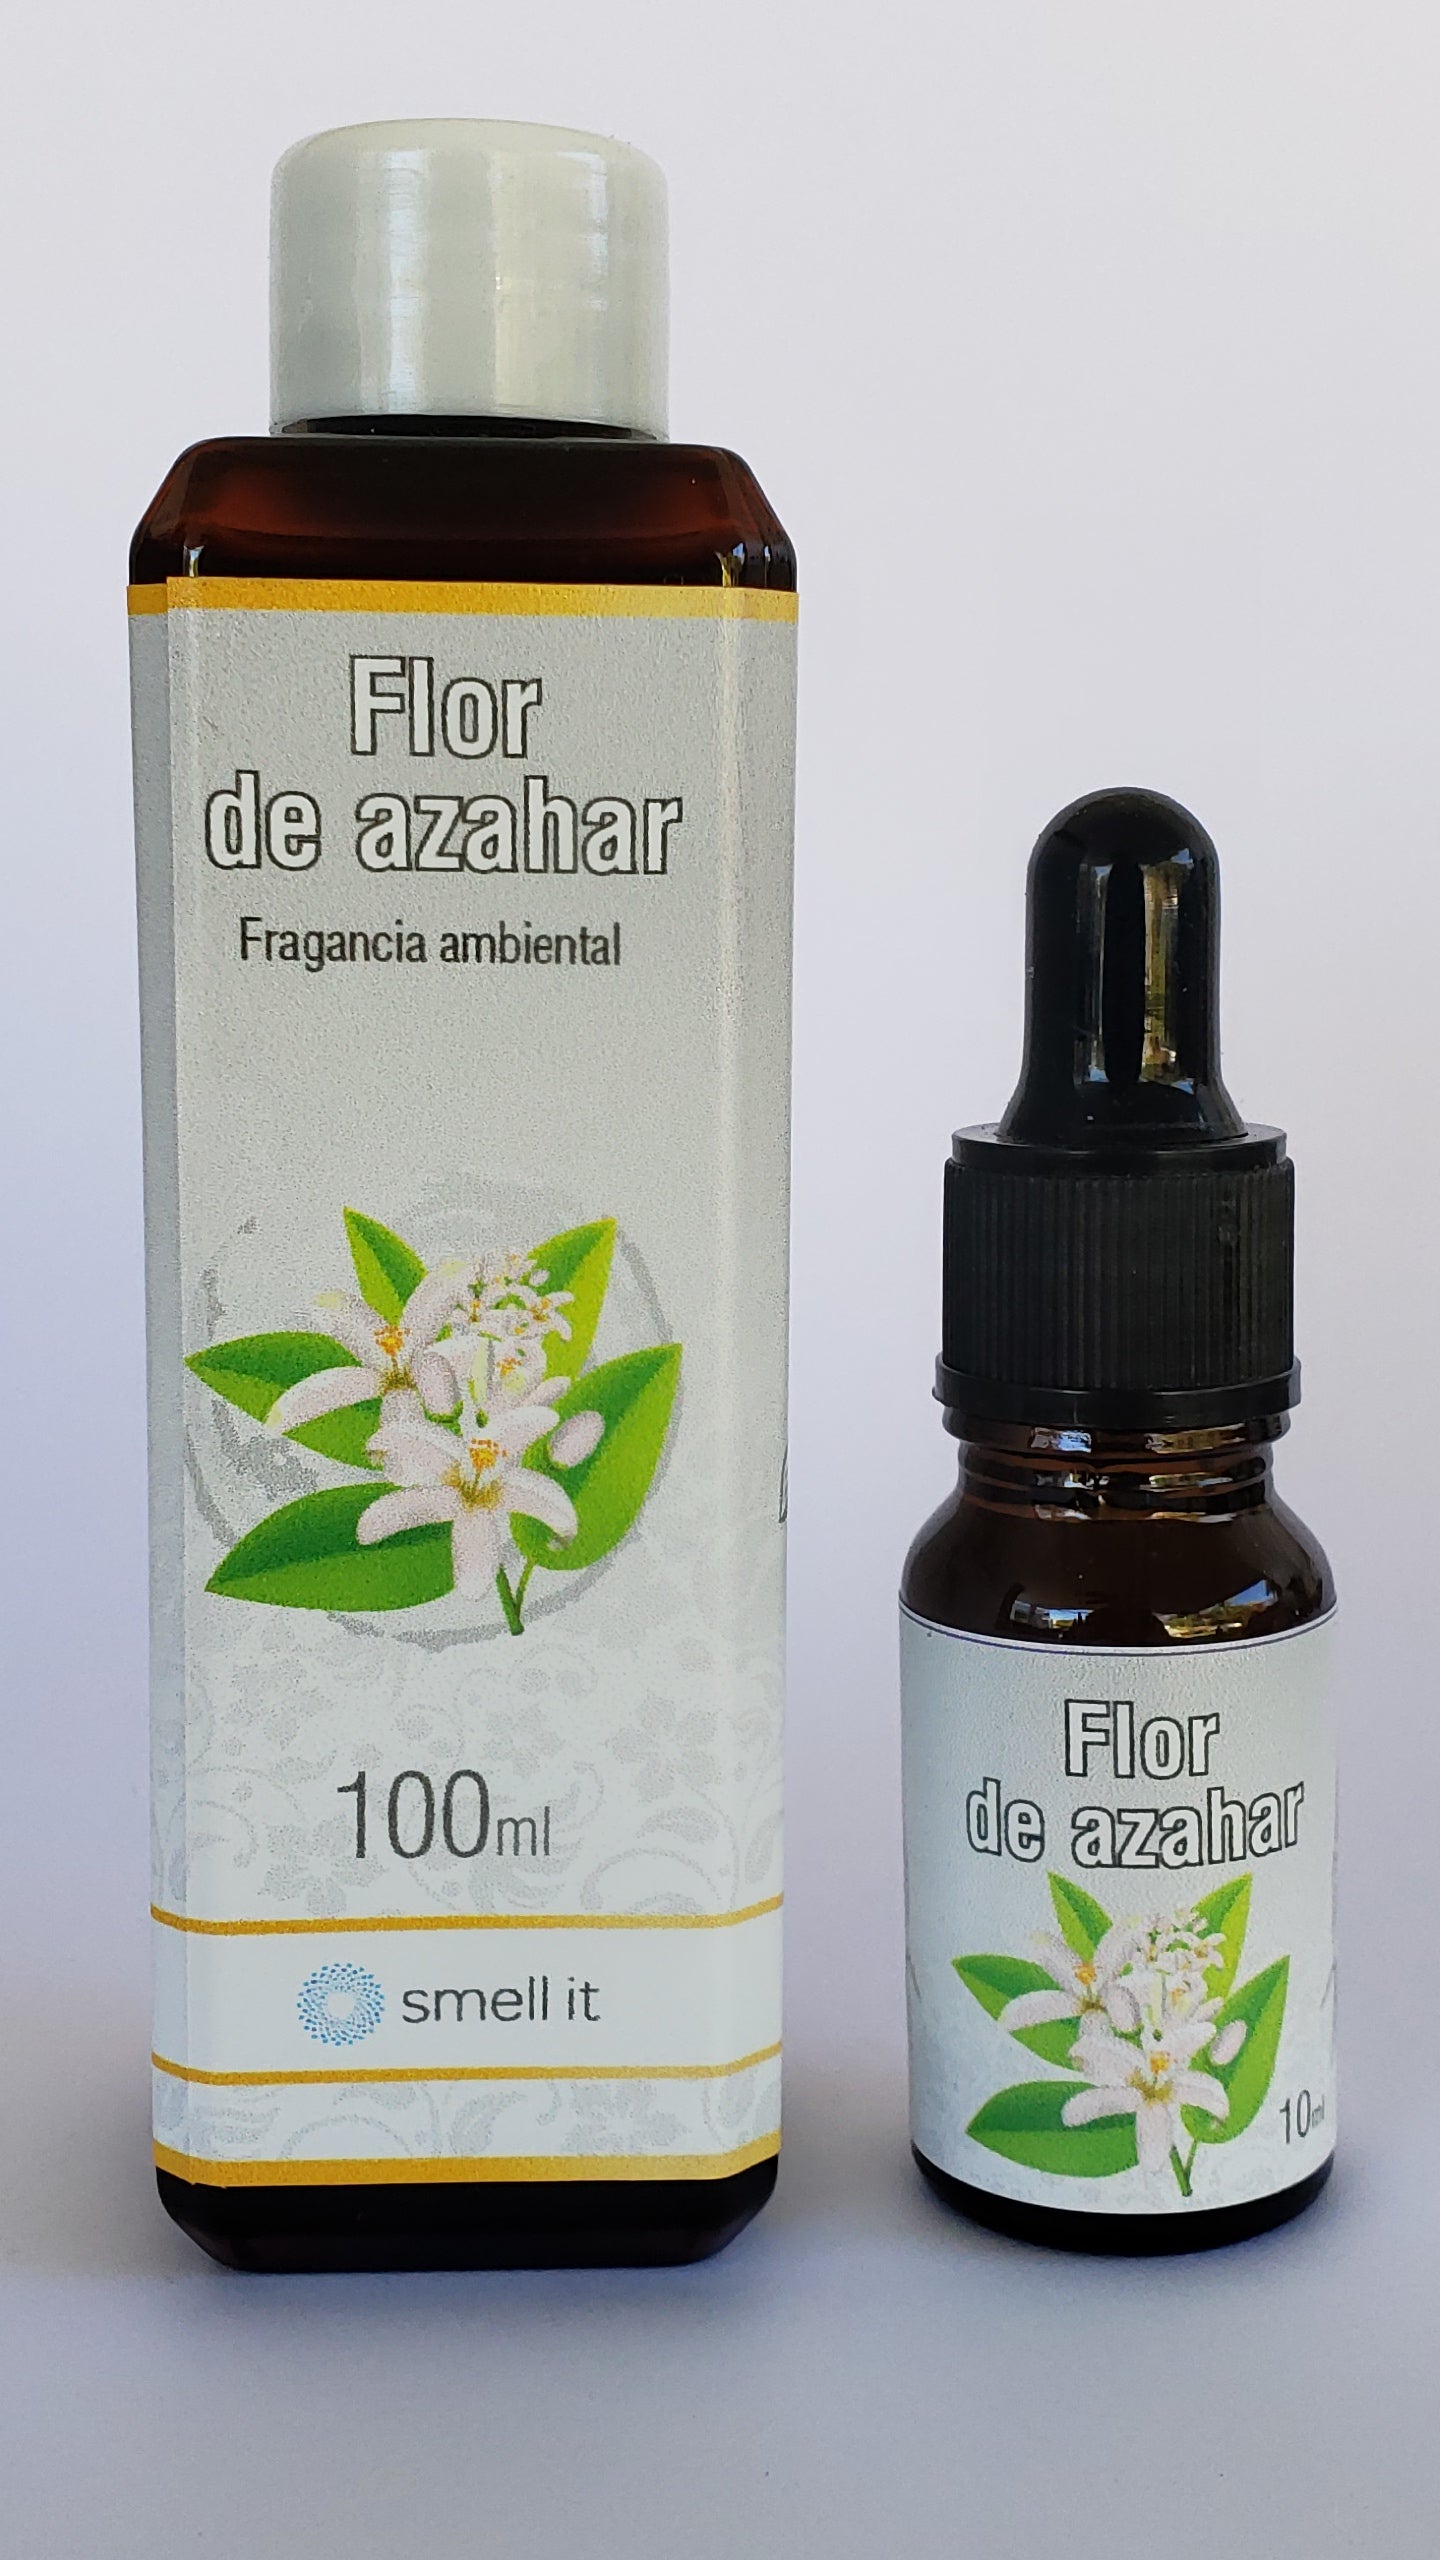 Fragancia Ambiental - Flor de Azahar